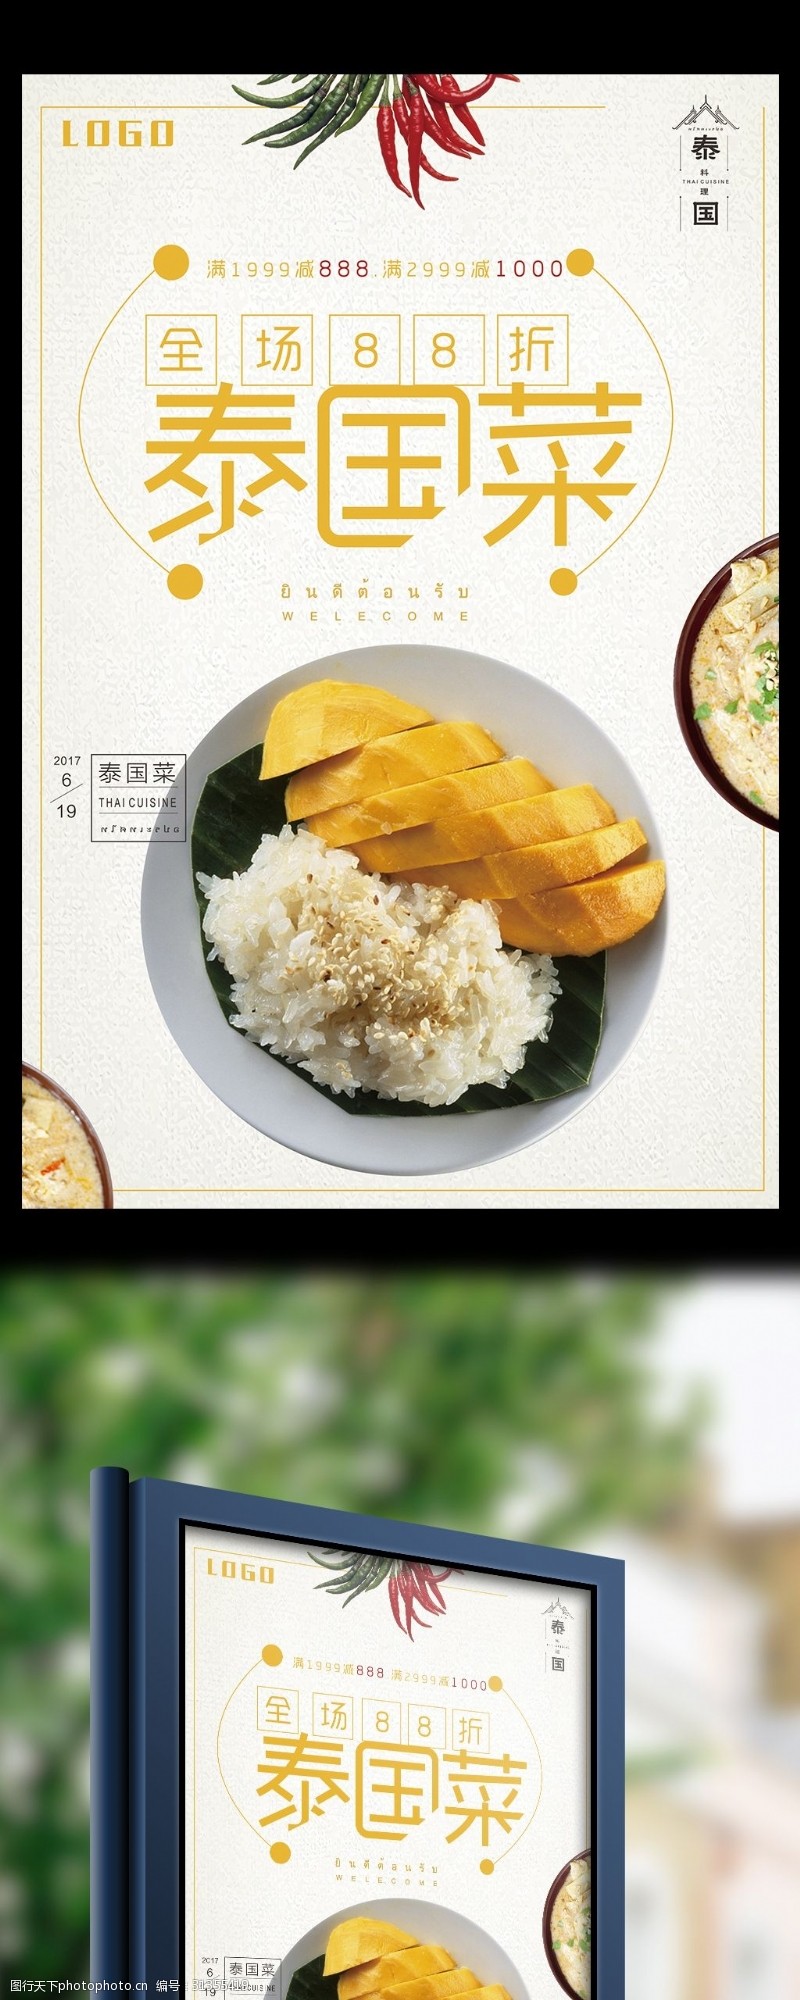 东南泰国菜特色美食全场促销海报